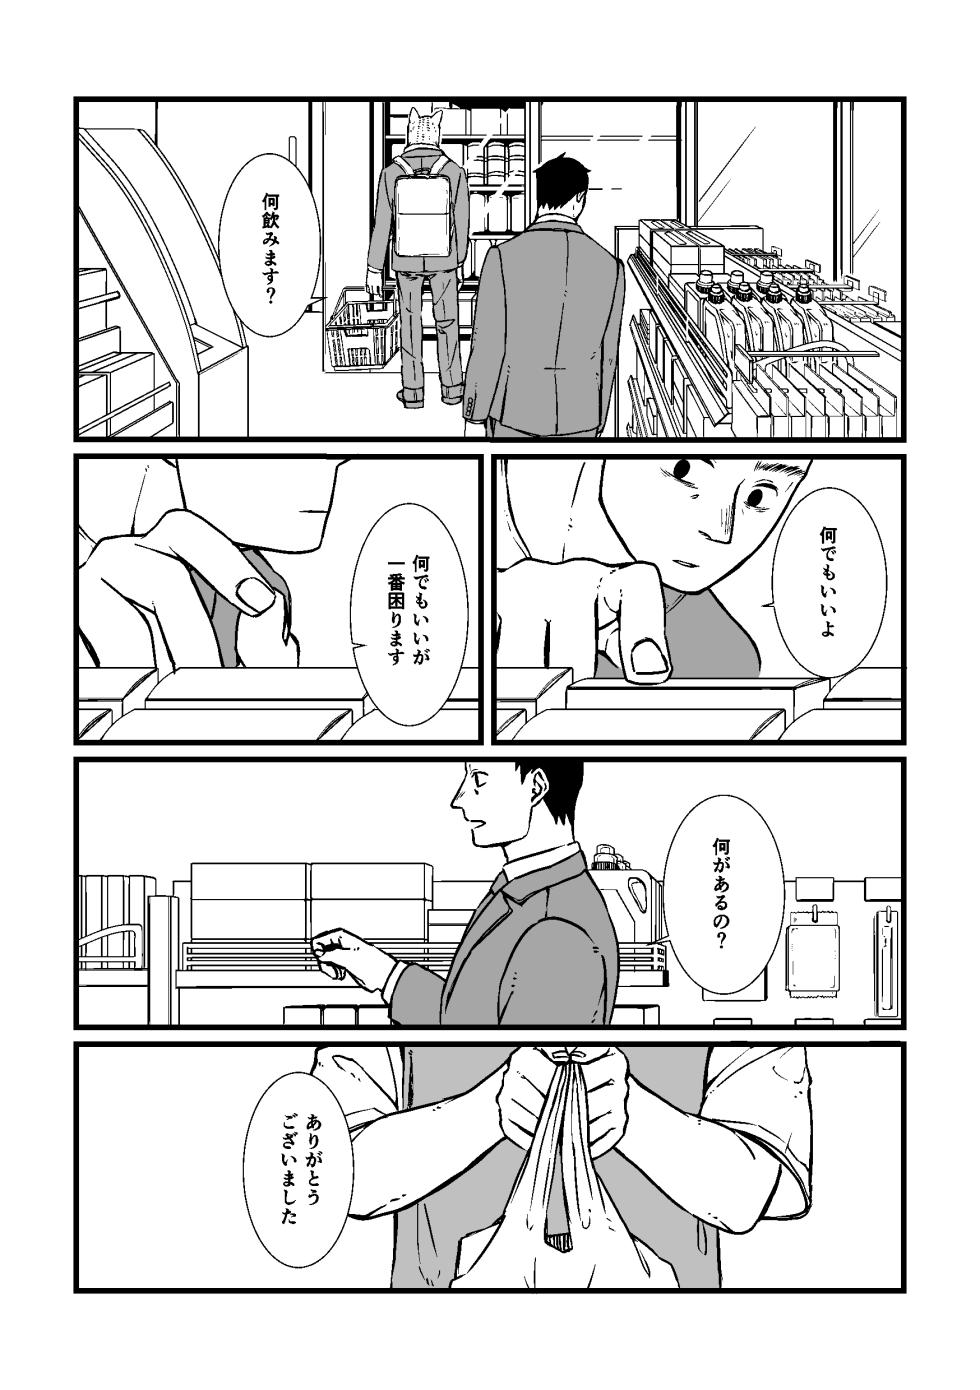 [Nozomi] Sansa x Tsukauchi R18 Manga (Boku no Hero Academia) [Digital] - Page 5